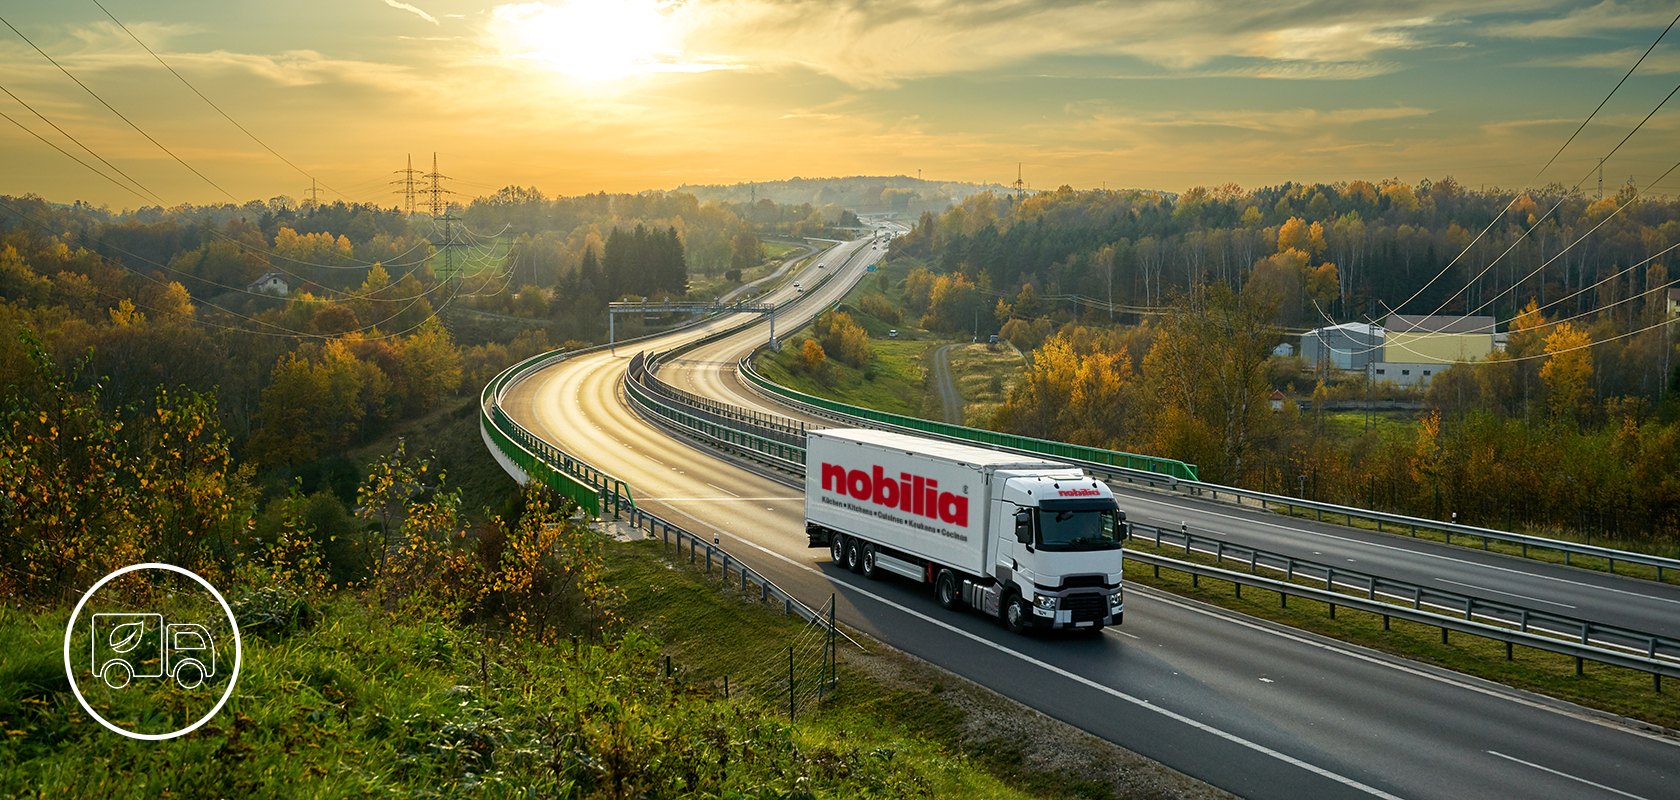 Ein Lastwagen der Marke "nobilia" fährt auf einer kurvenreichen Autobahn durch eine lebhafte Herbstlandschaft mit Laub und fernen Hügeln.